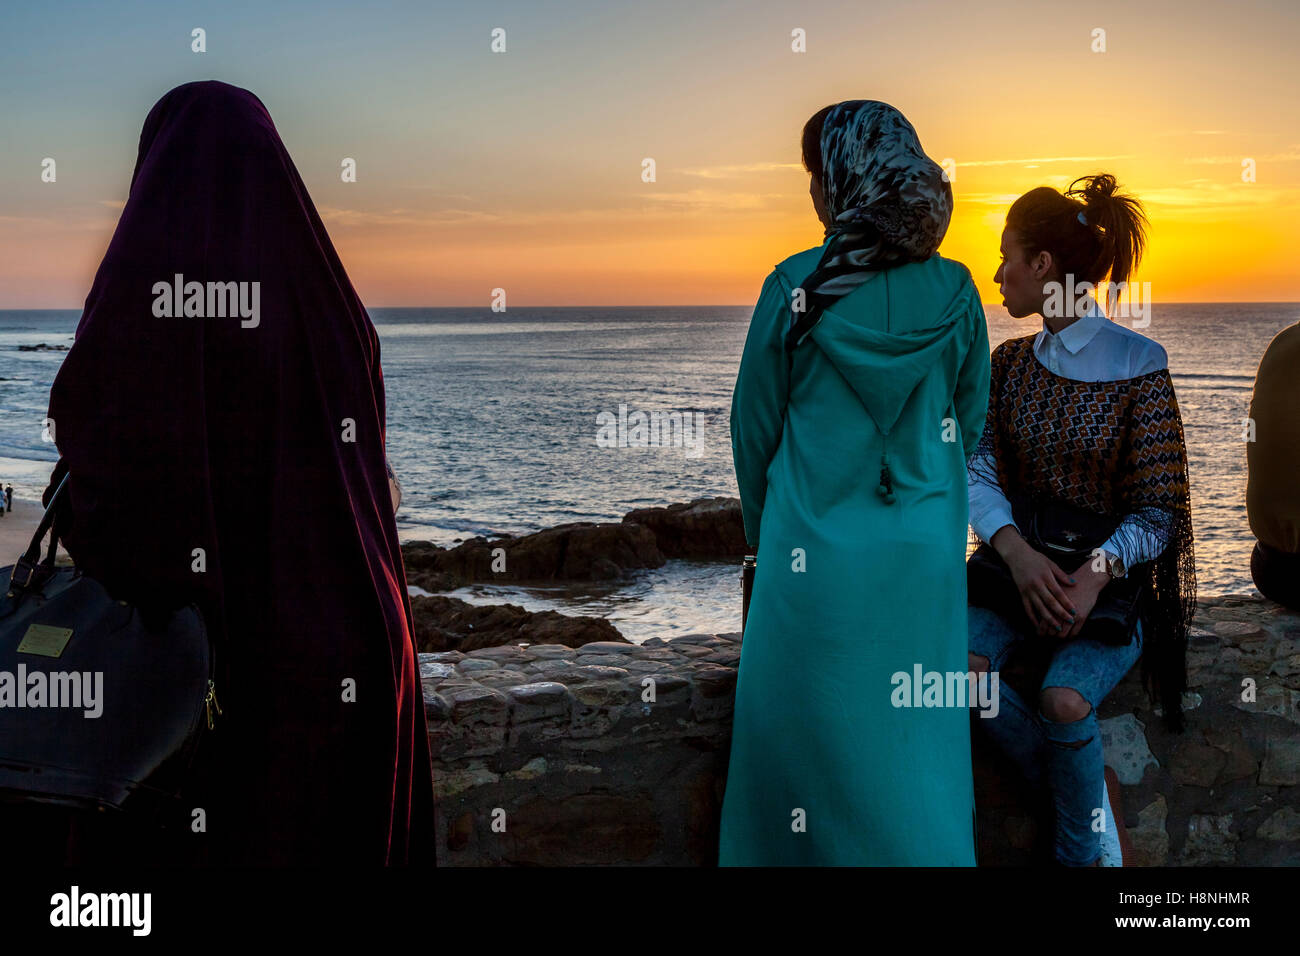 La gente joven marroquí ver el atardecer desde un punto de vista popular en la localidad costera de Asilah, Marruecos Foto de stock